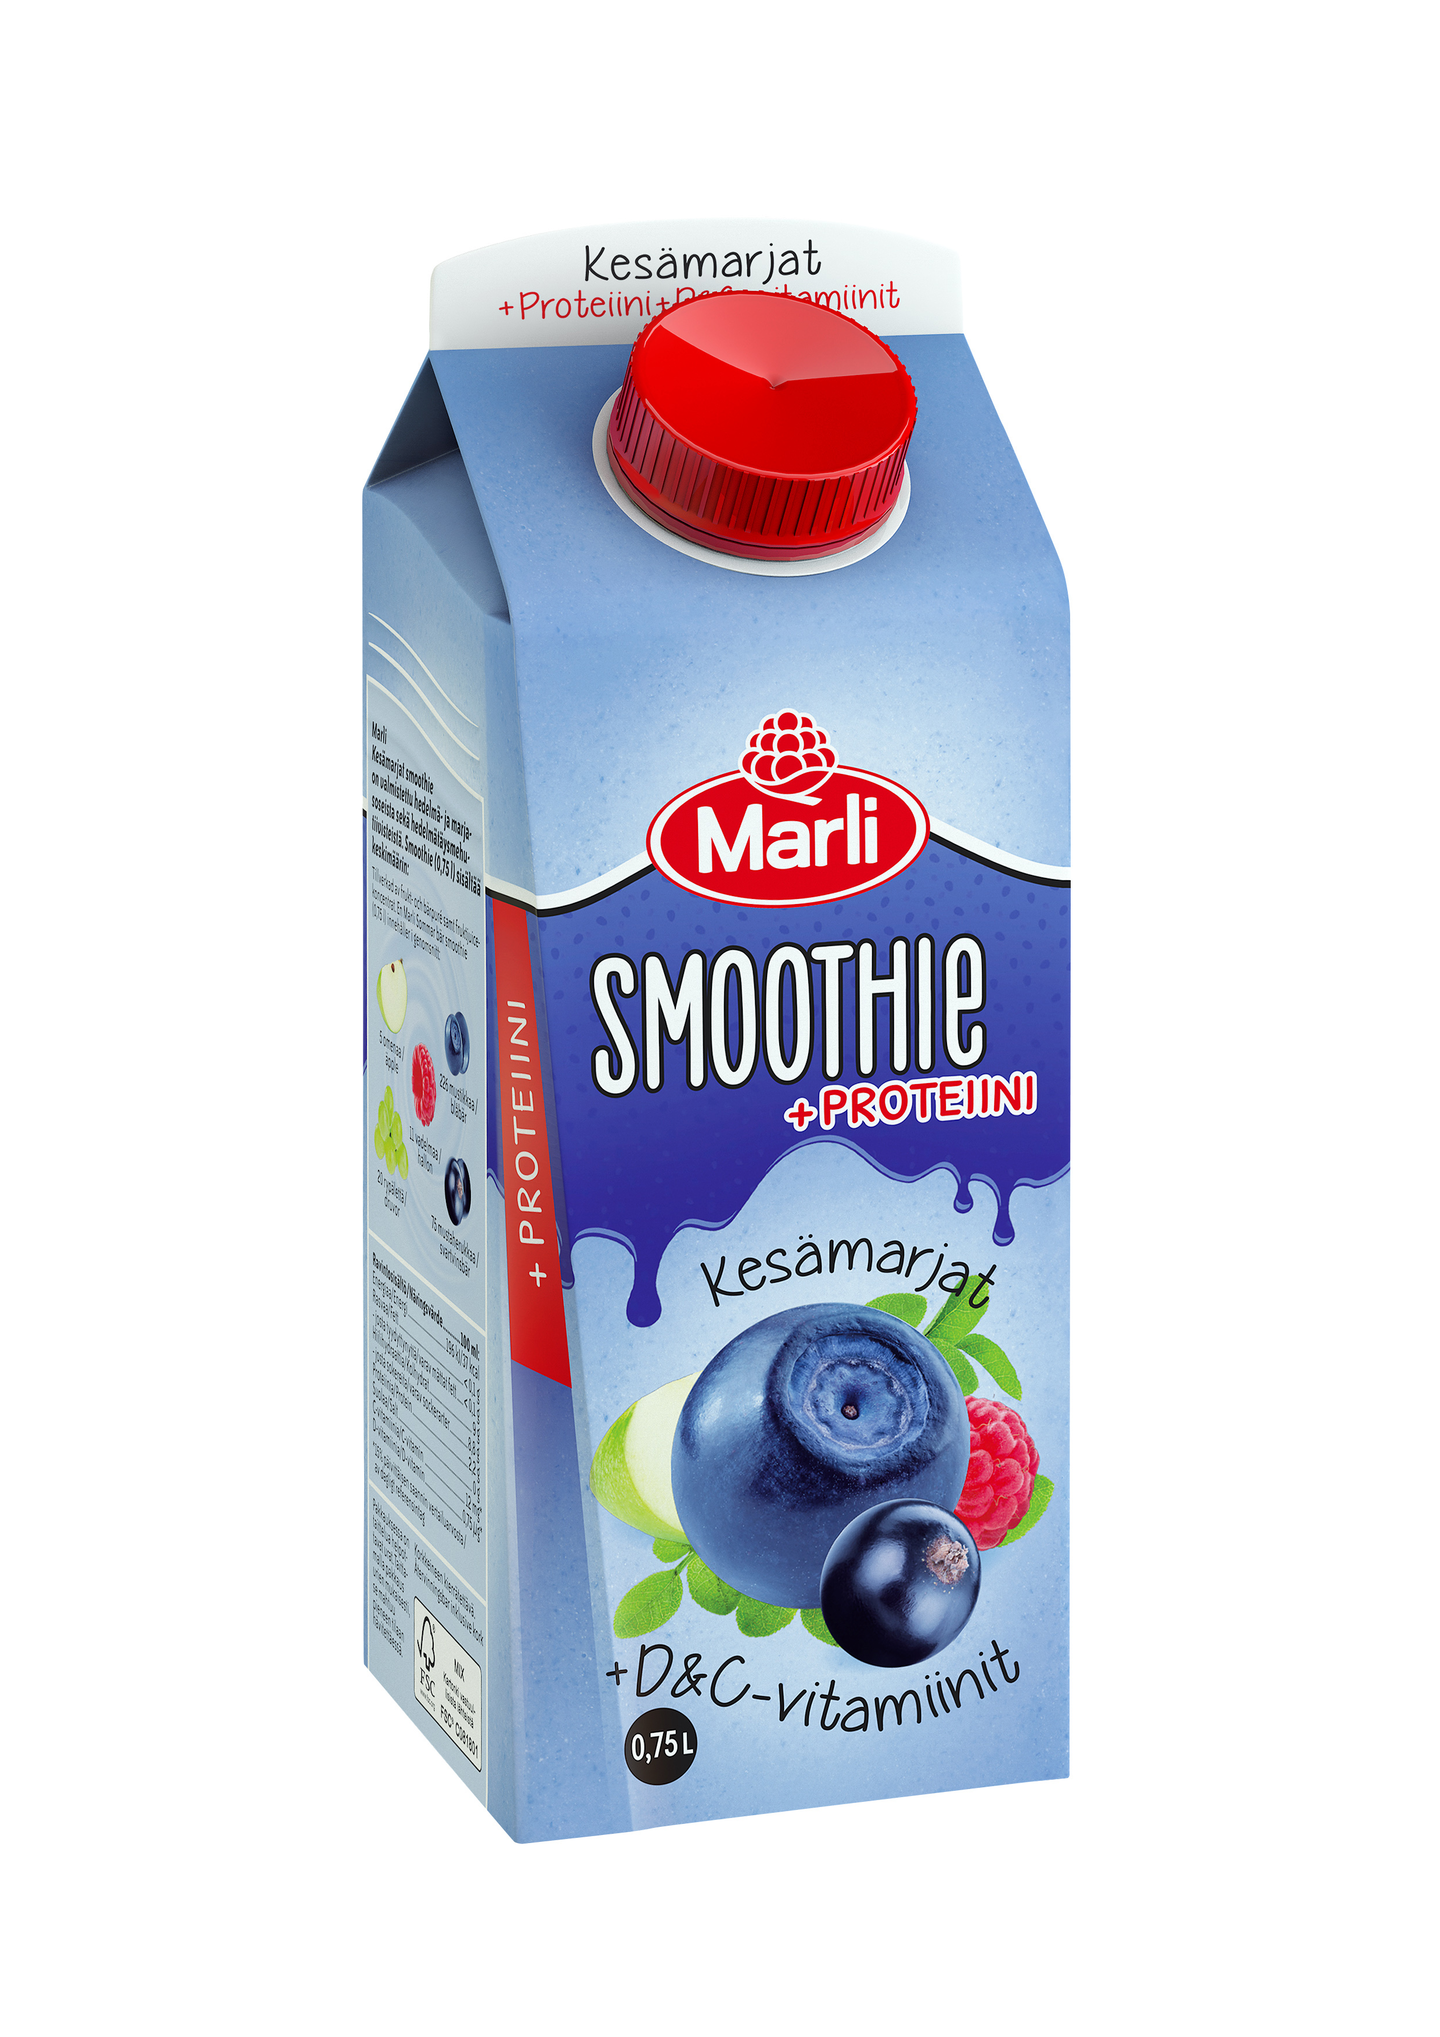 Marli kesämarjat smoothie + D&C -vitamiinit ja proteiini 0,75l | K-Ruoka  Verkkokauppa